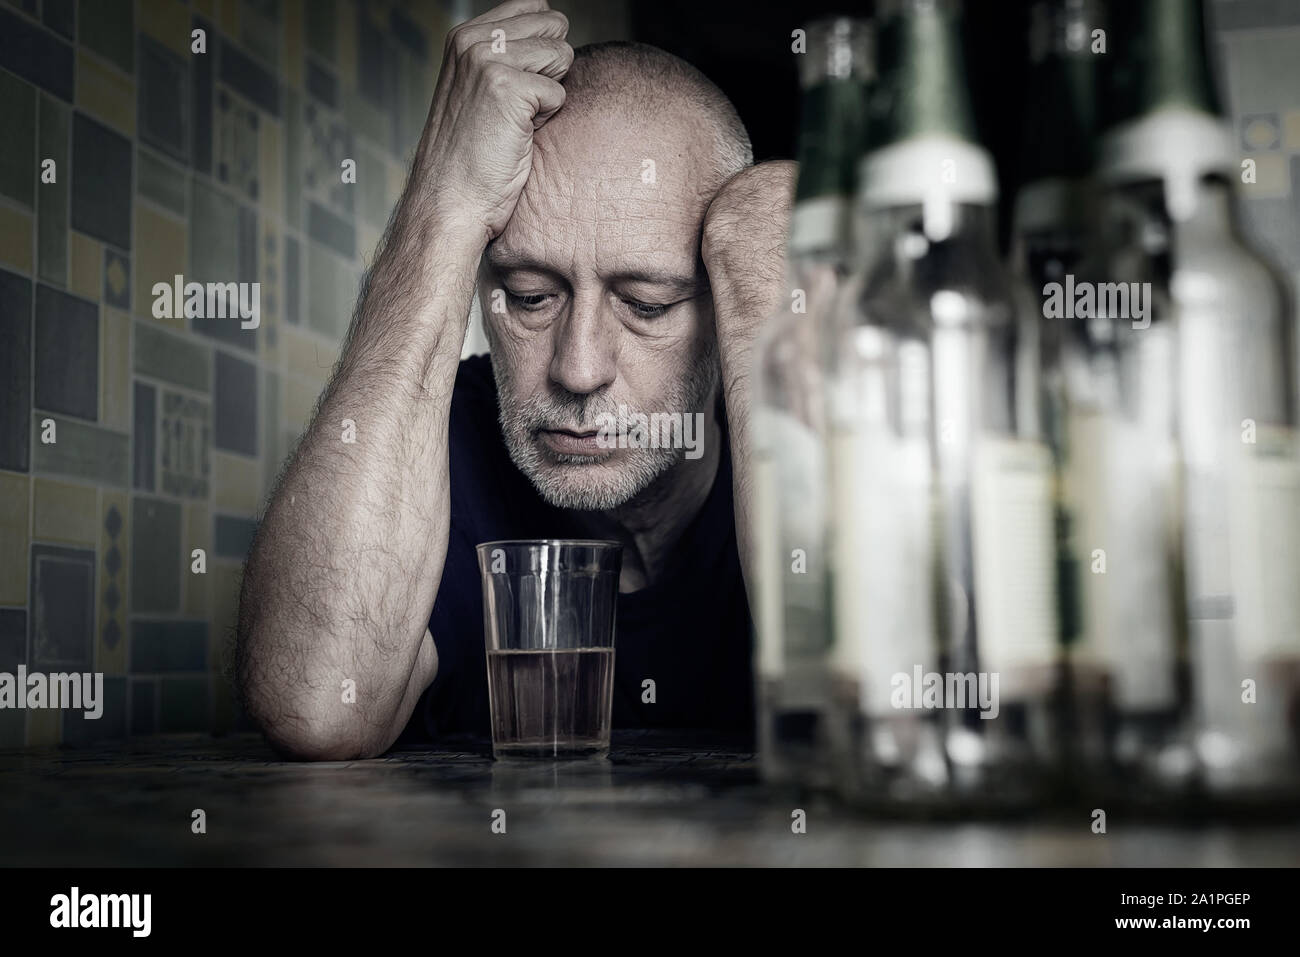 Un homme désespéré tombe dans la dépression et devient alcoolique et malheureux. Sa dépendance le conduit à un état de solitude et de la pauvreté. Il n'a pas de hop Banque D'Images